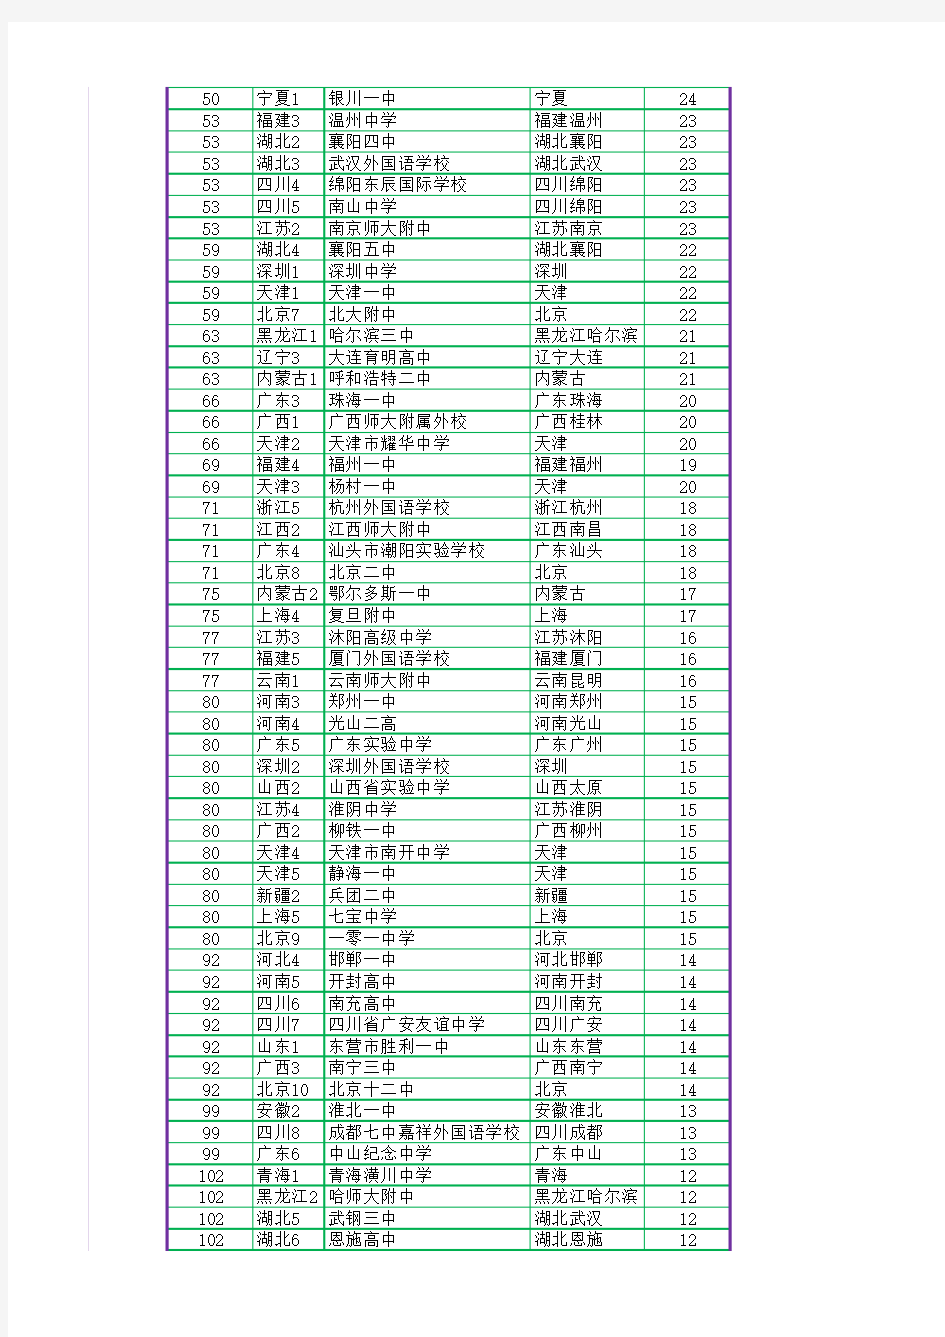 2015年全国高中考入清华北大明细表